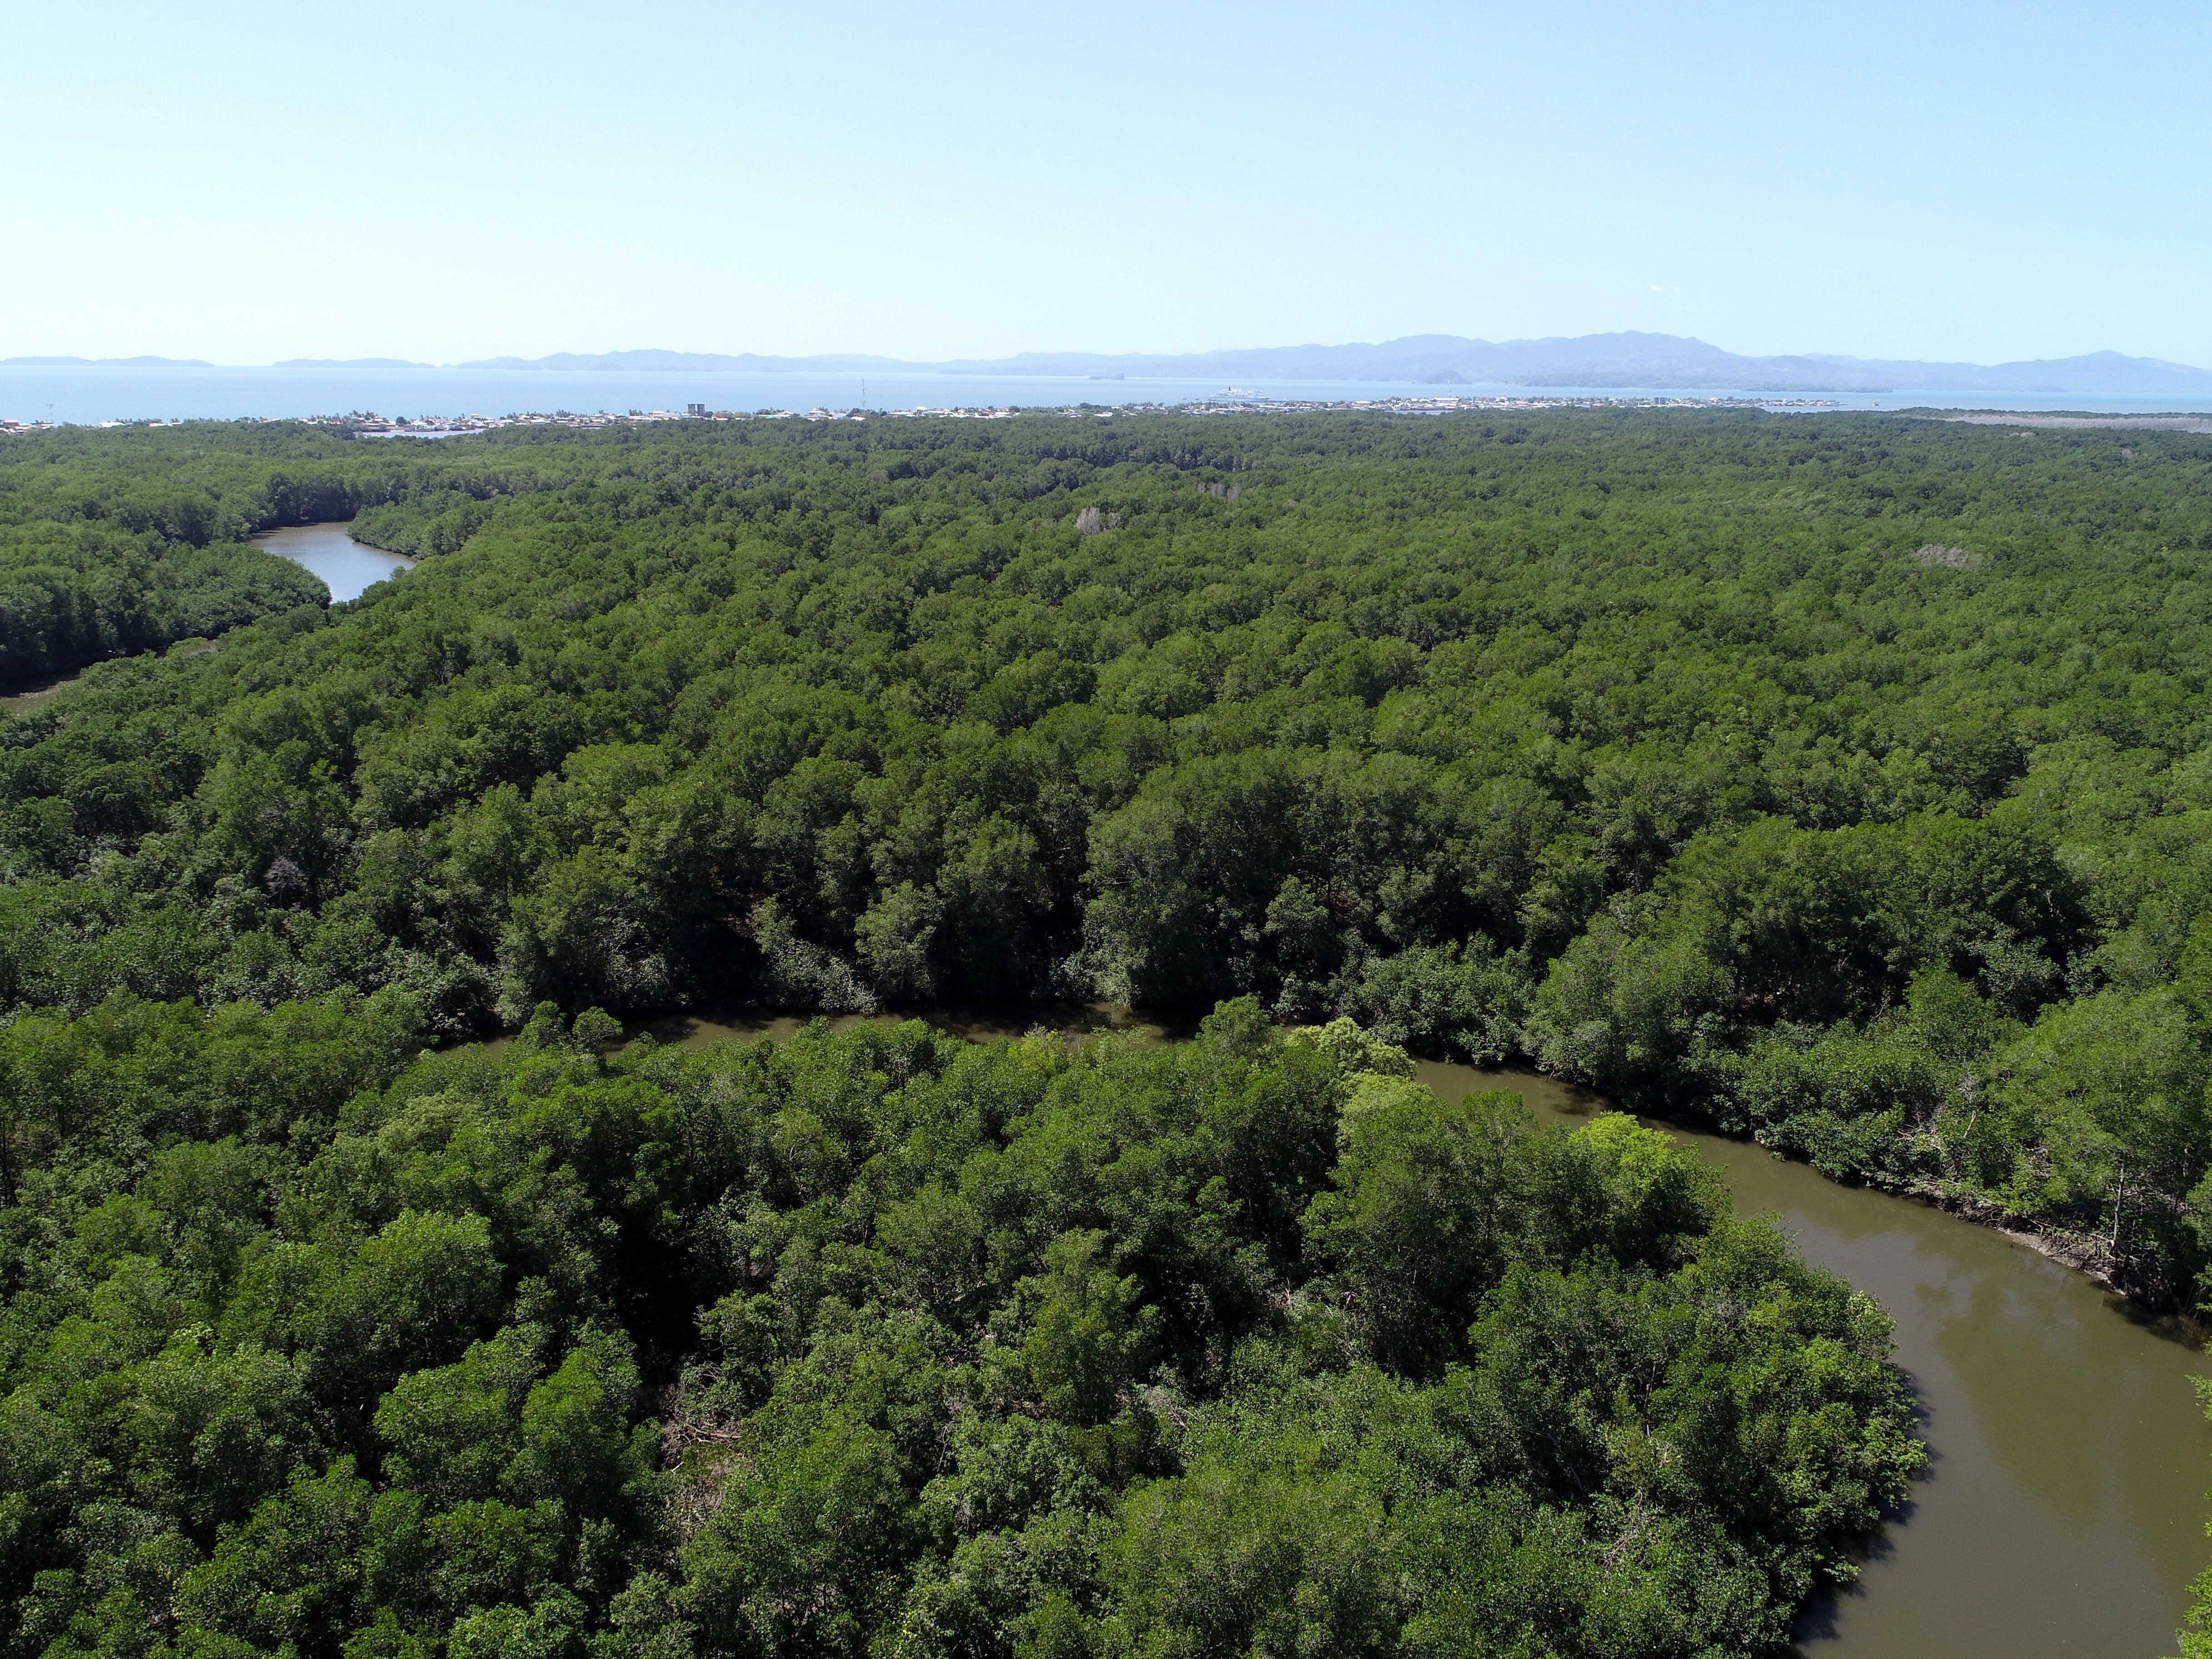 Parte del manglar en el estero de Puntarenas (ciudad se ve al fondo). En Costa Rica, la cobertura de manglar rondaba las 52.802 hectáreas (alrededor de 1% del territorio nacional) al 2021. Fotografía: Lenin Corrales Chaves para LN.